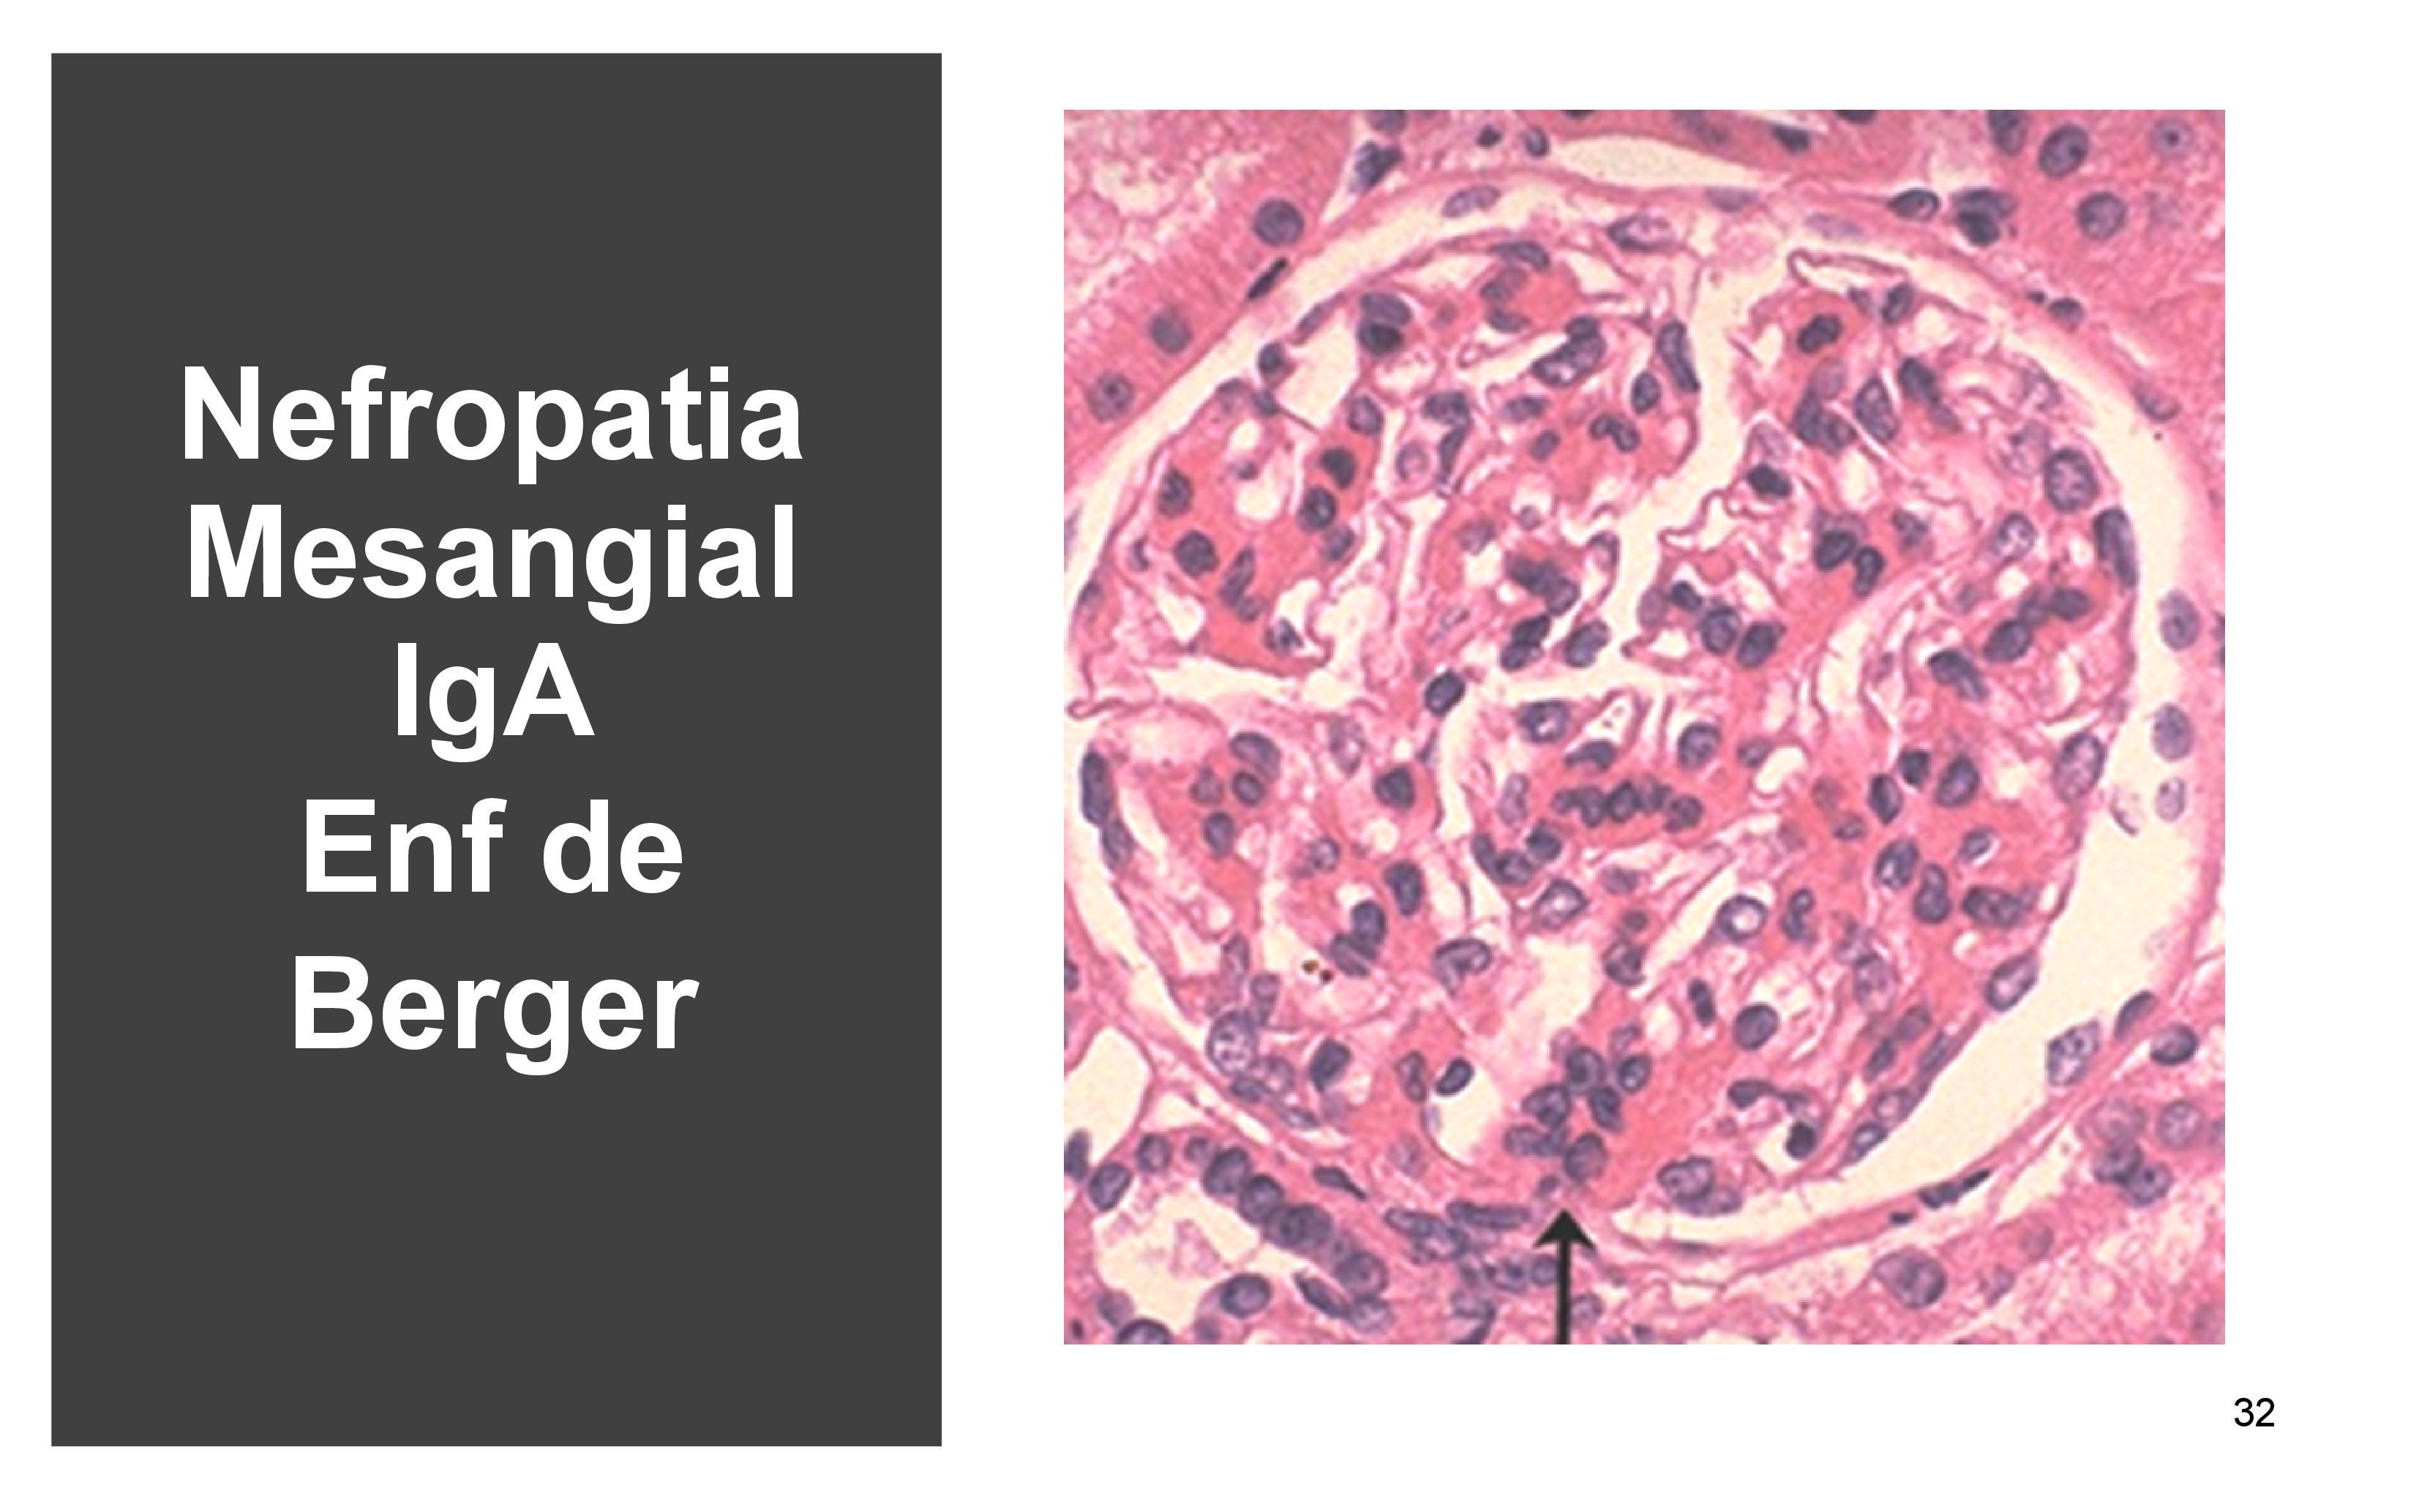 La nefropatía proliferativa mesangial es la mas frecuente , también se llama enfermedad de Berger porque la describió el Dr Berger del Hospital de Necker en Paris.
Es una glomerulonefritis con proliferación mesangial, en la biopsia observamos mas de 3 células por área de mesangia como vemos en la flecha.